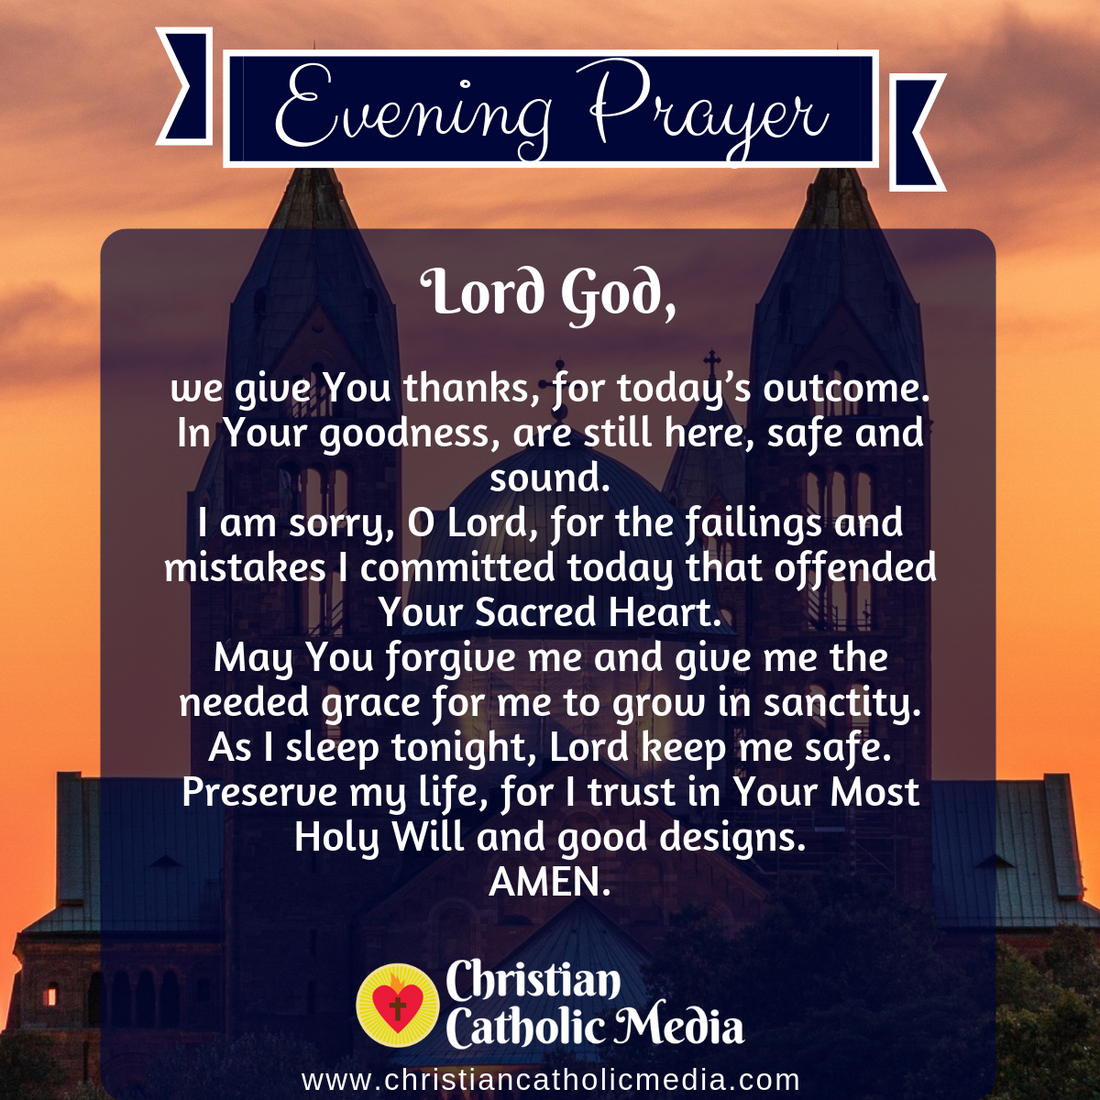 Evening Prayer Catholic Thursday November 25, 2021